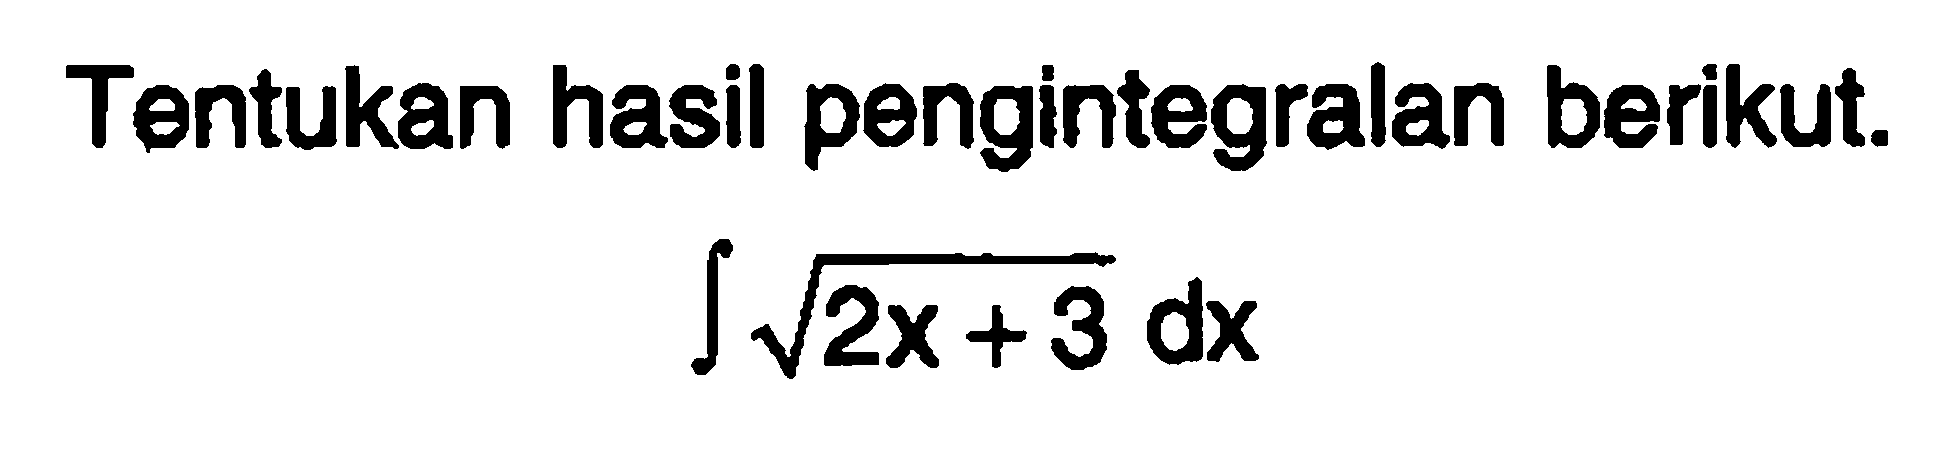 Tentukan hasil pengintegralan berikut.

integral akar(2x+3) dx
